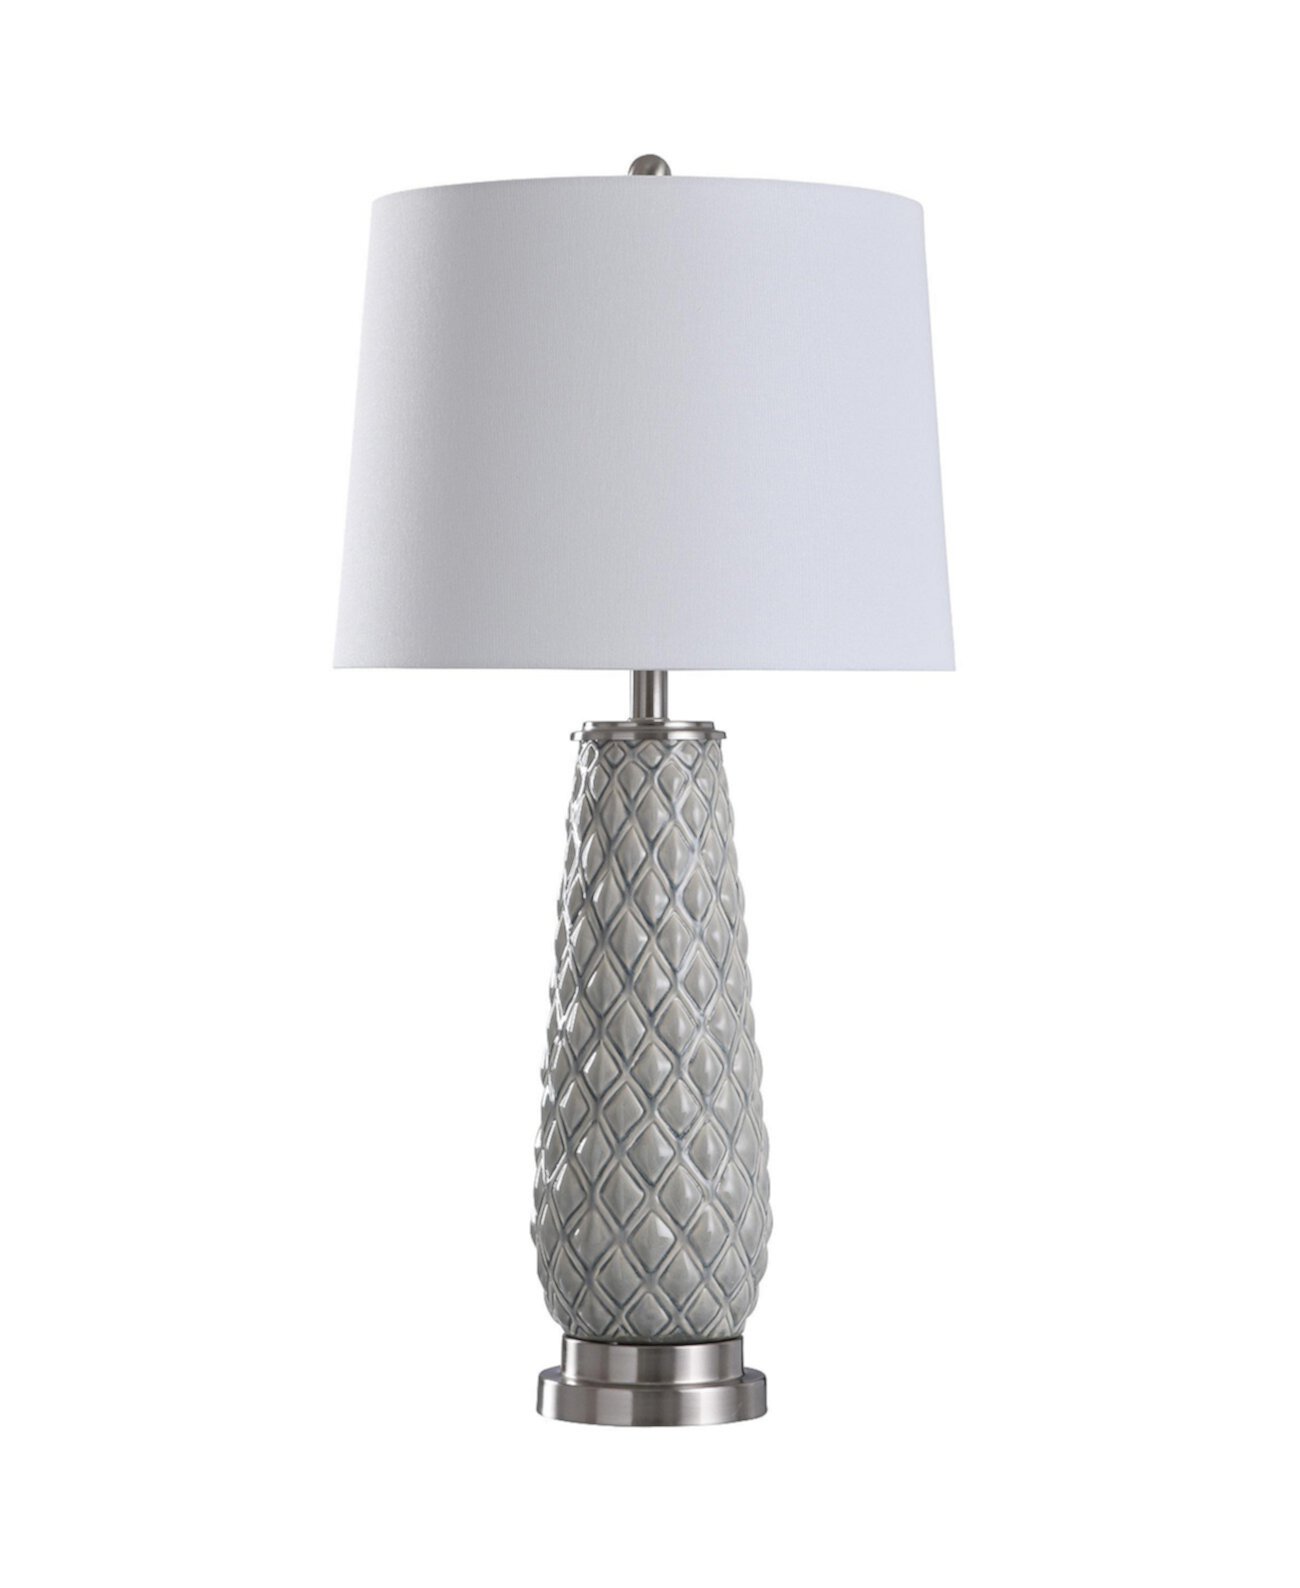 Настольная лампа с керамическим корпусом Hanson Sky 32in StyleCraft Home Collection